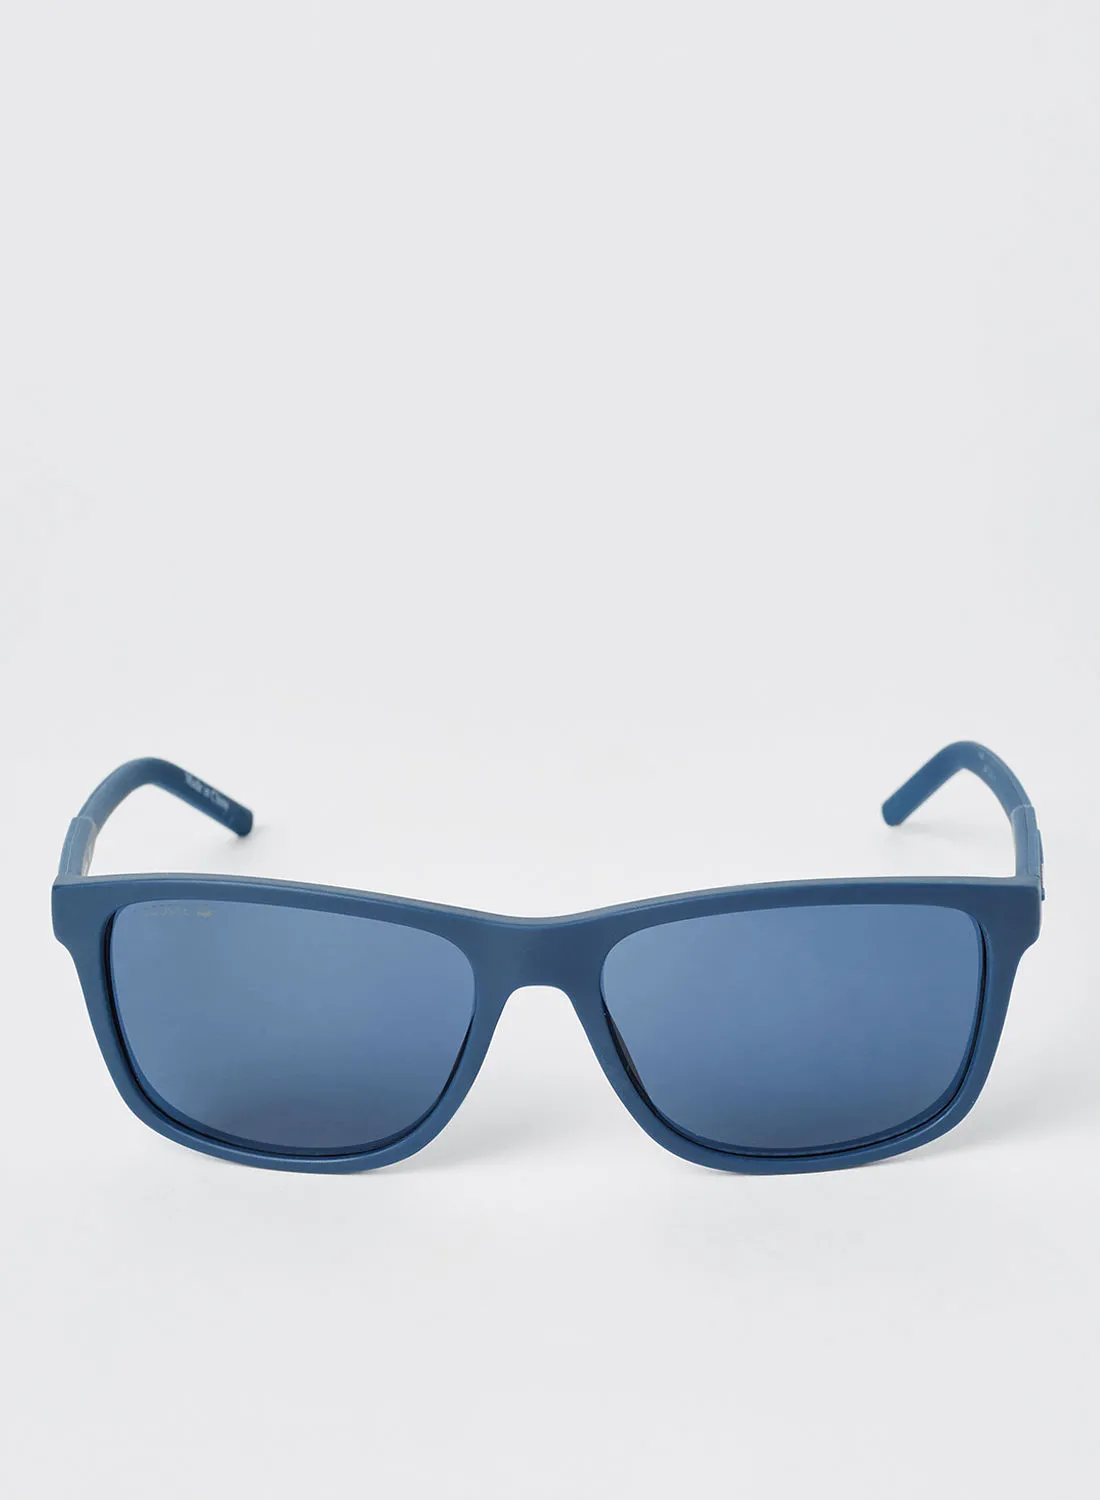 LACOSTE Full Rimmed Modified Rectangular Frame Sunglasses - Lens Size: 56 mm